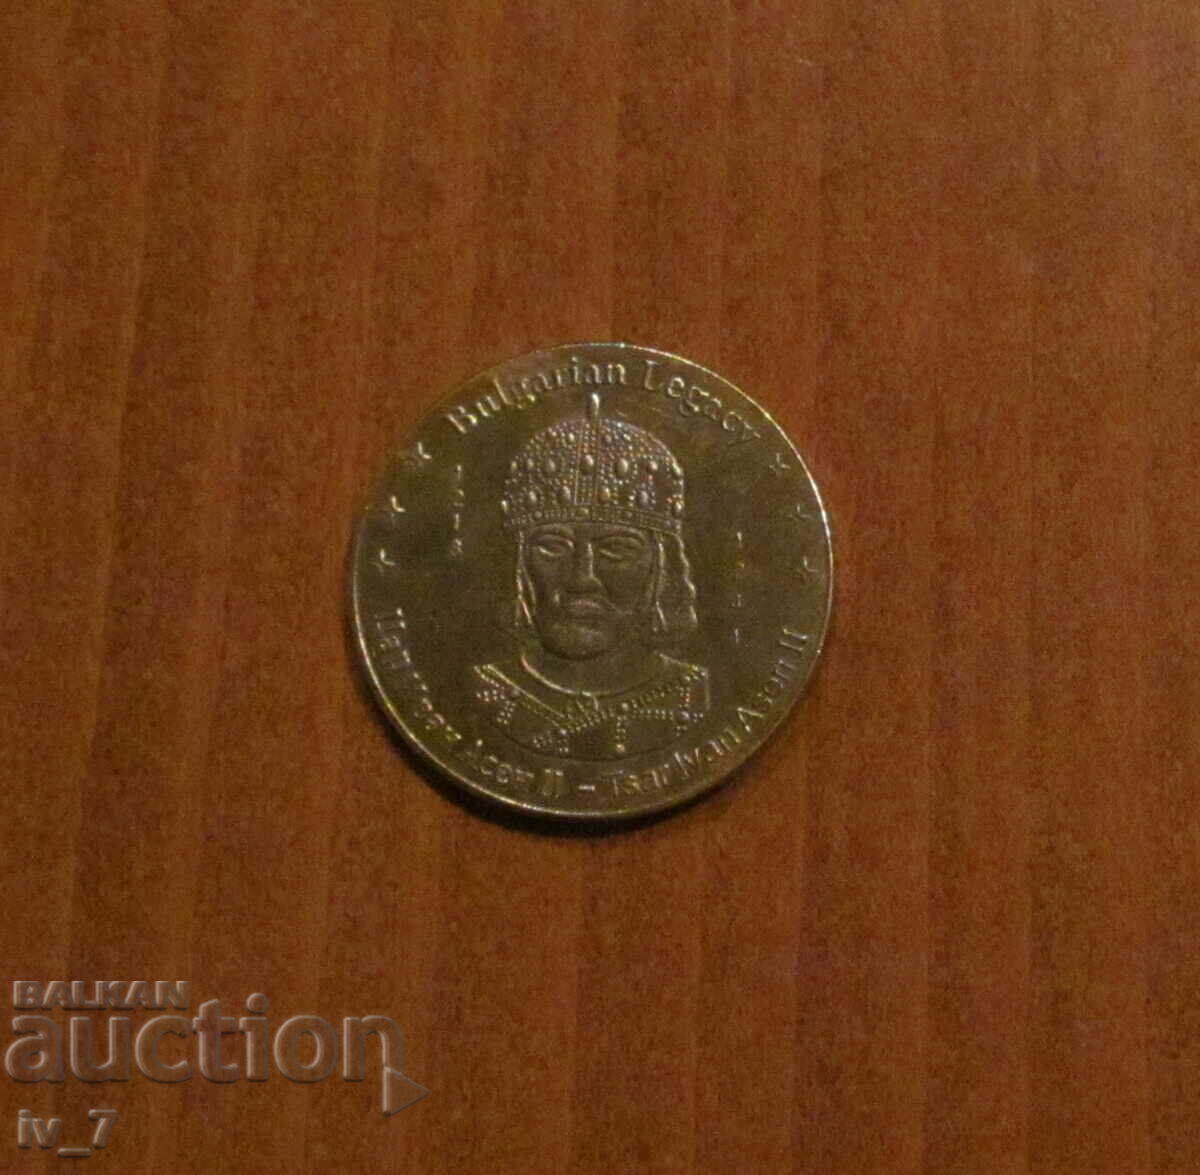 Αναμνηστικό νόμισμα "Bulgarian Heritage" - BING IVAN ASEN II